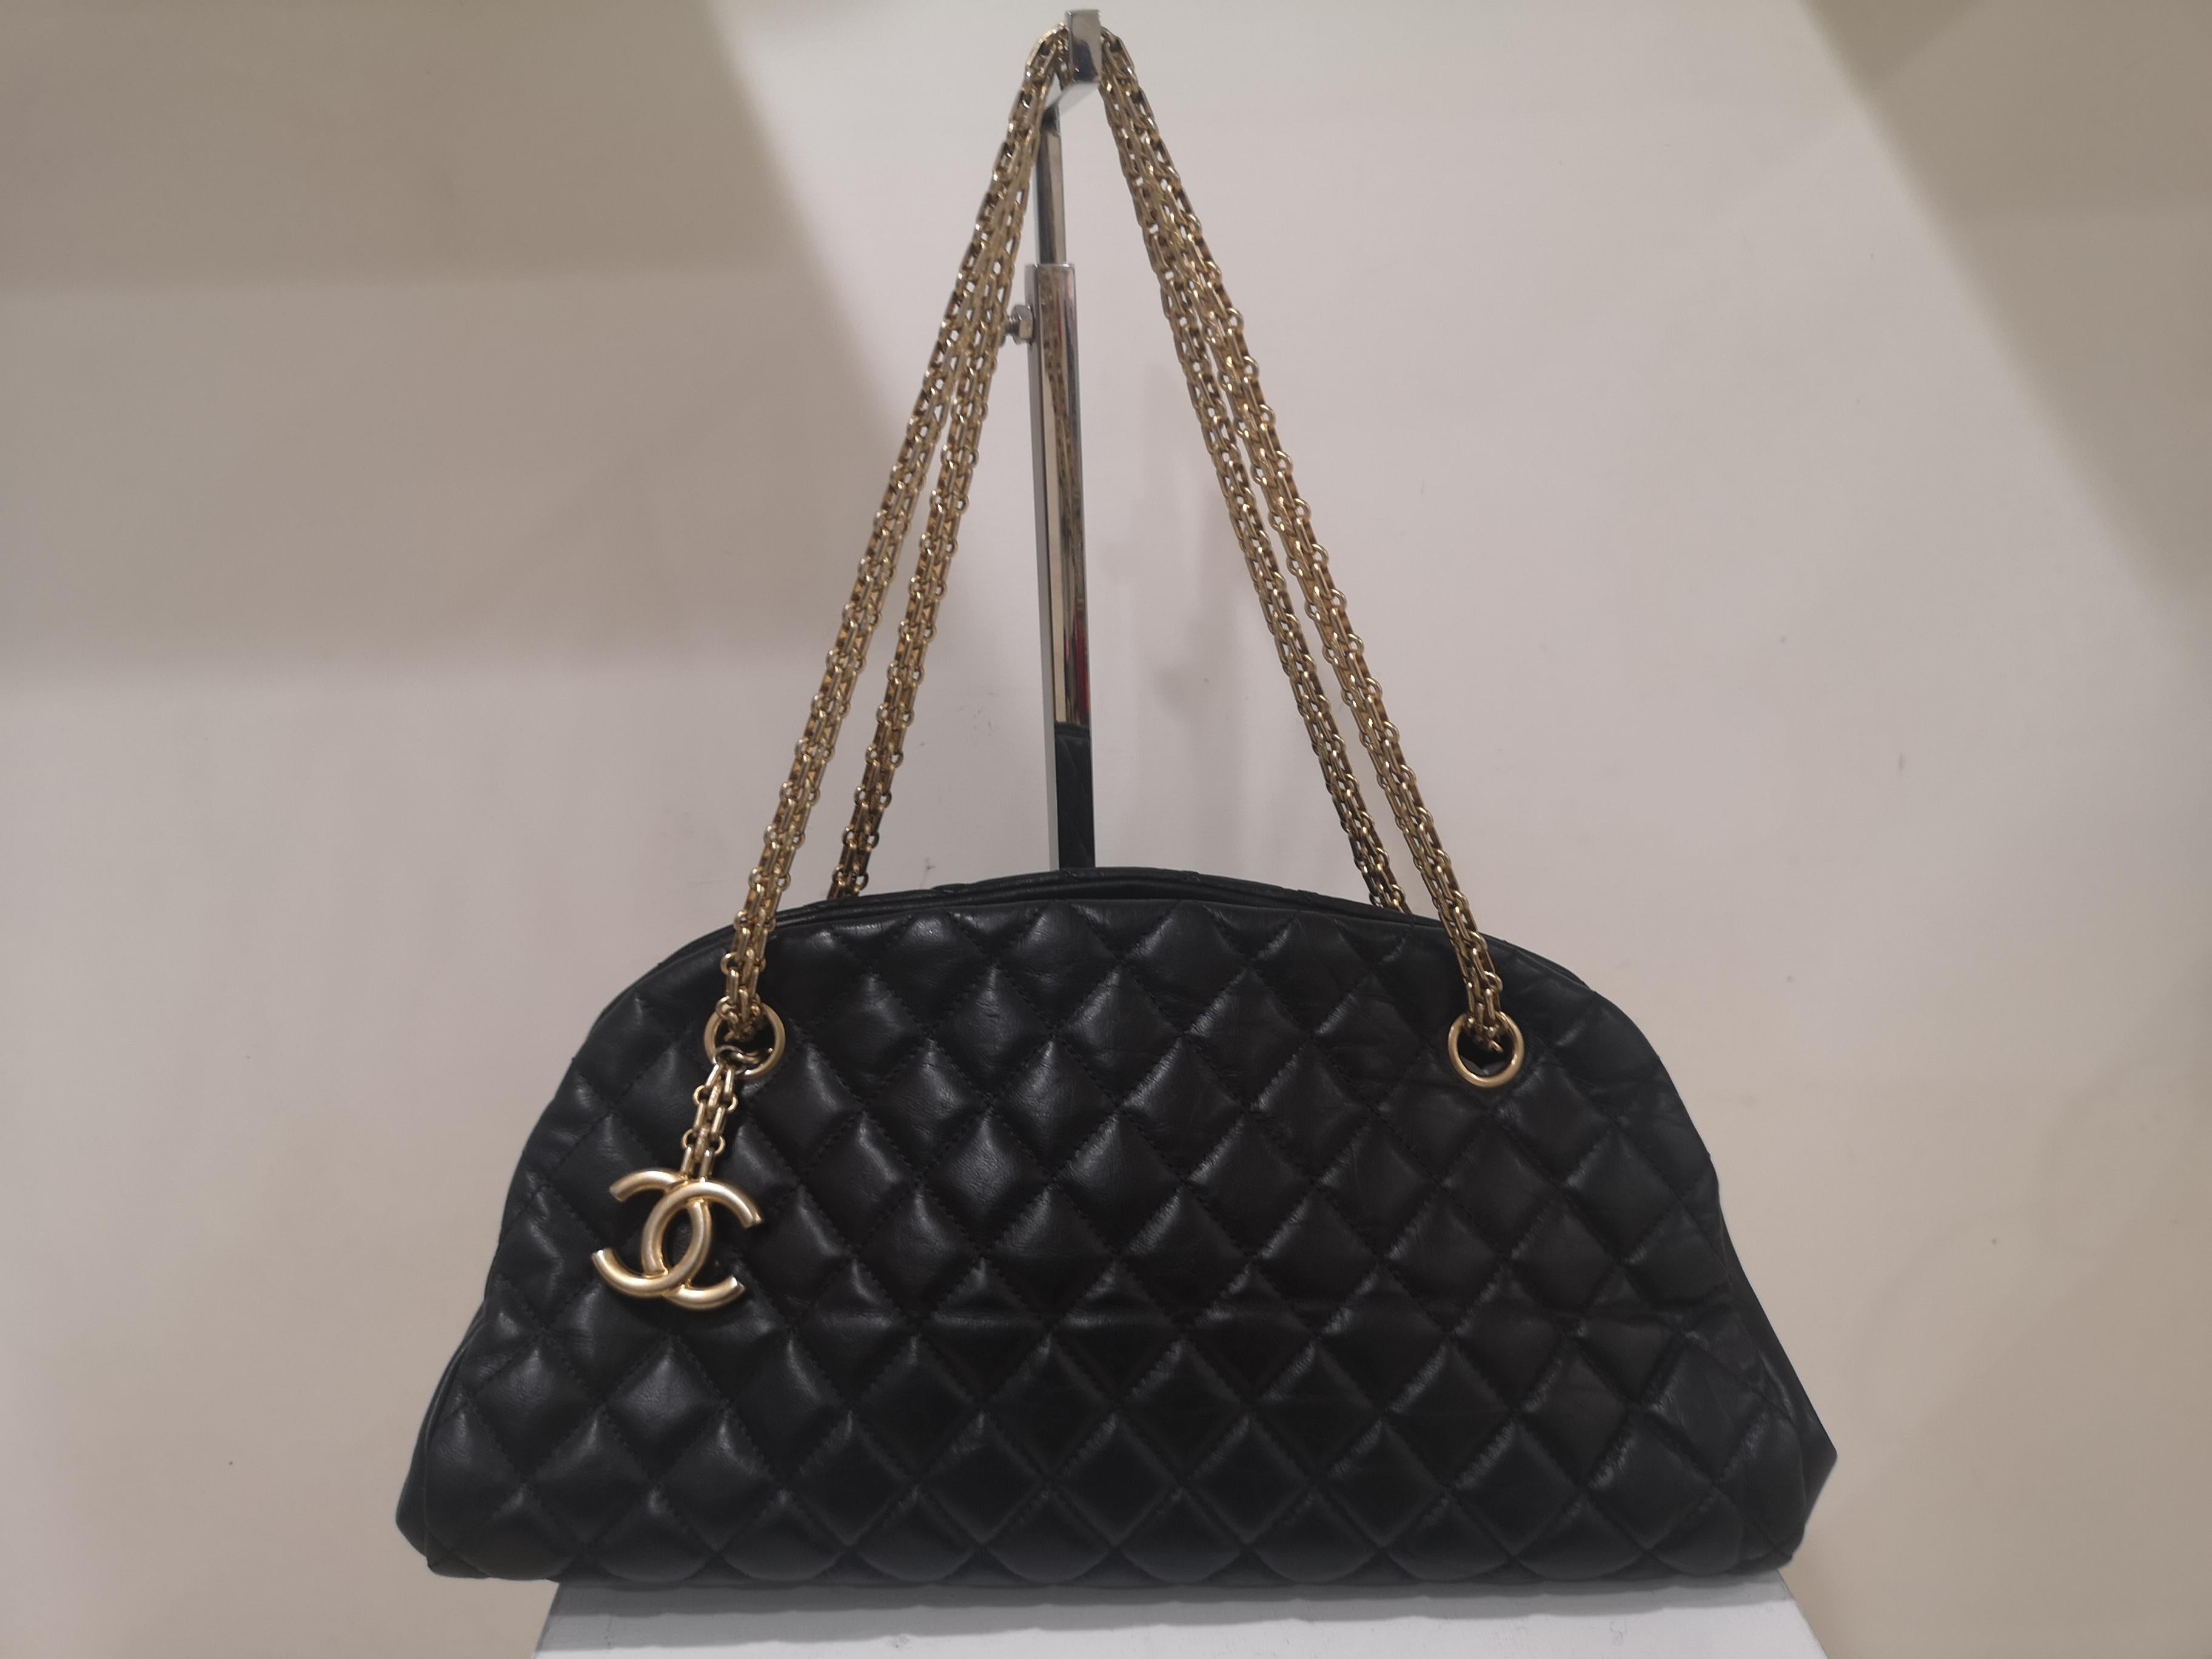 Chanel mademoiselle black leather shoulder bag 2